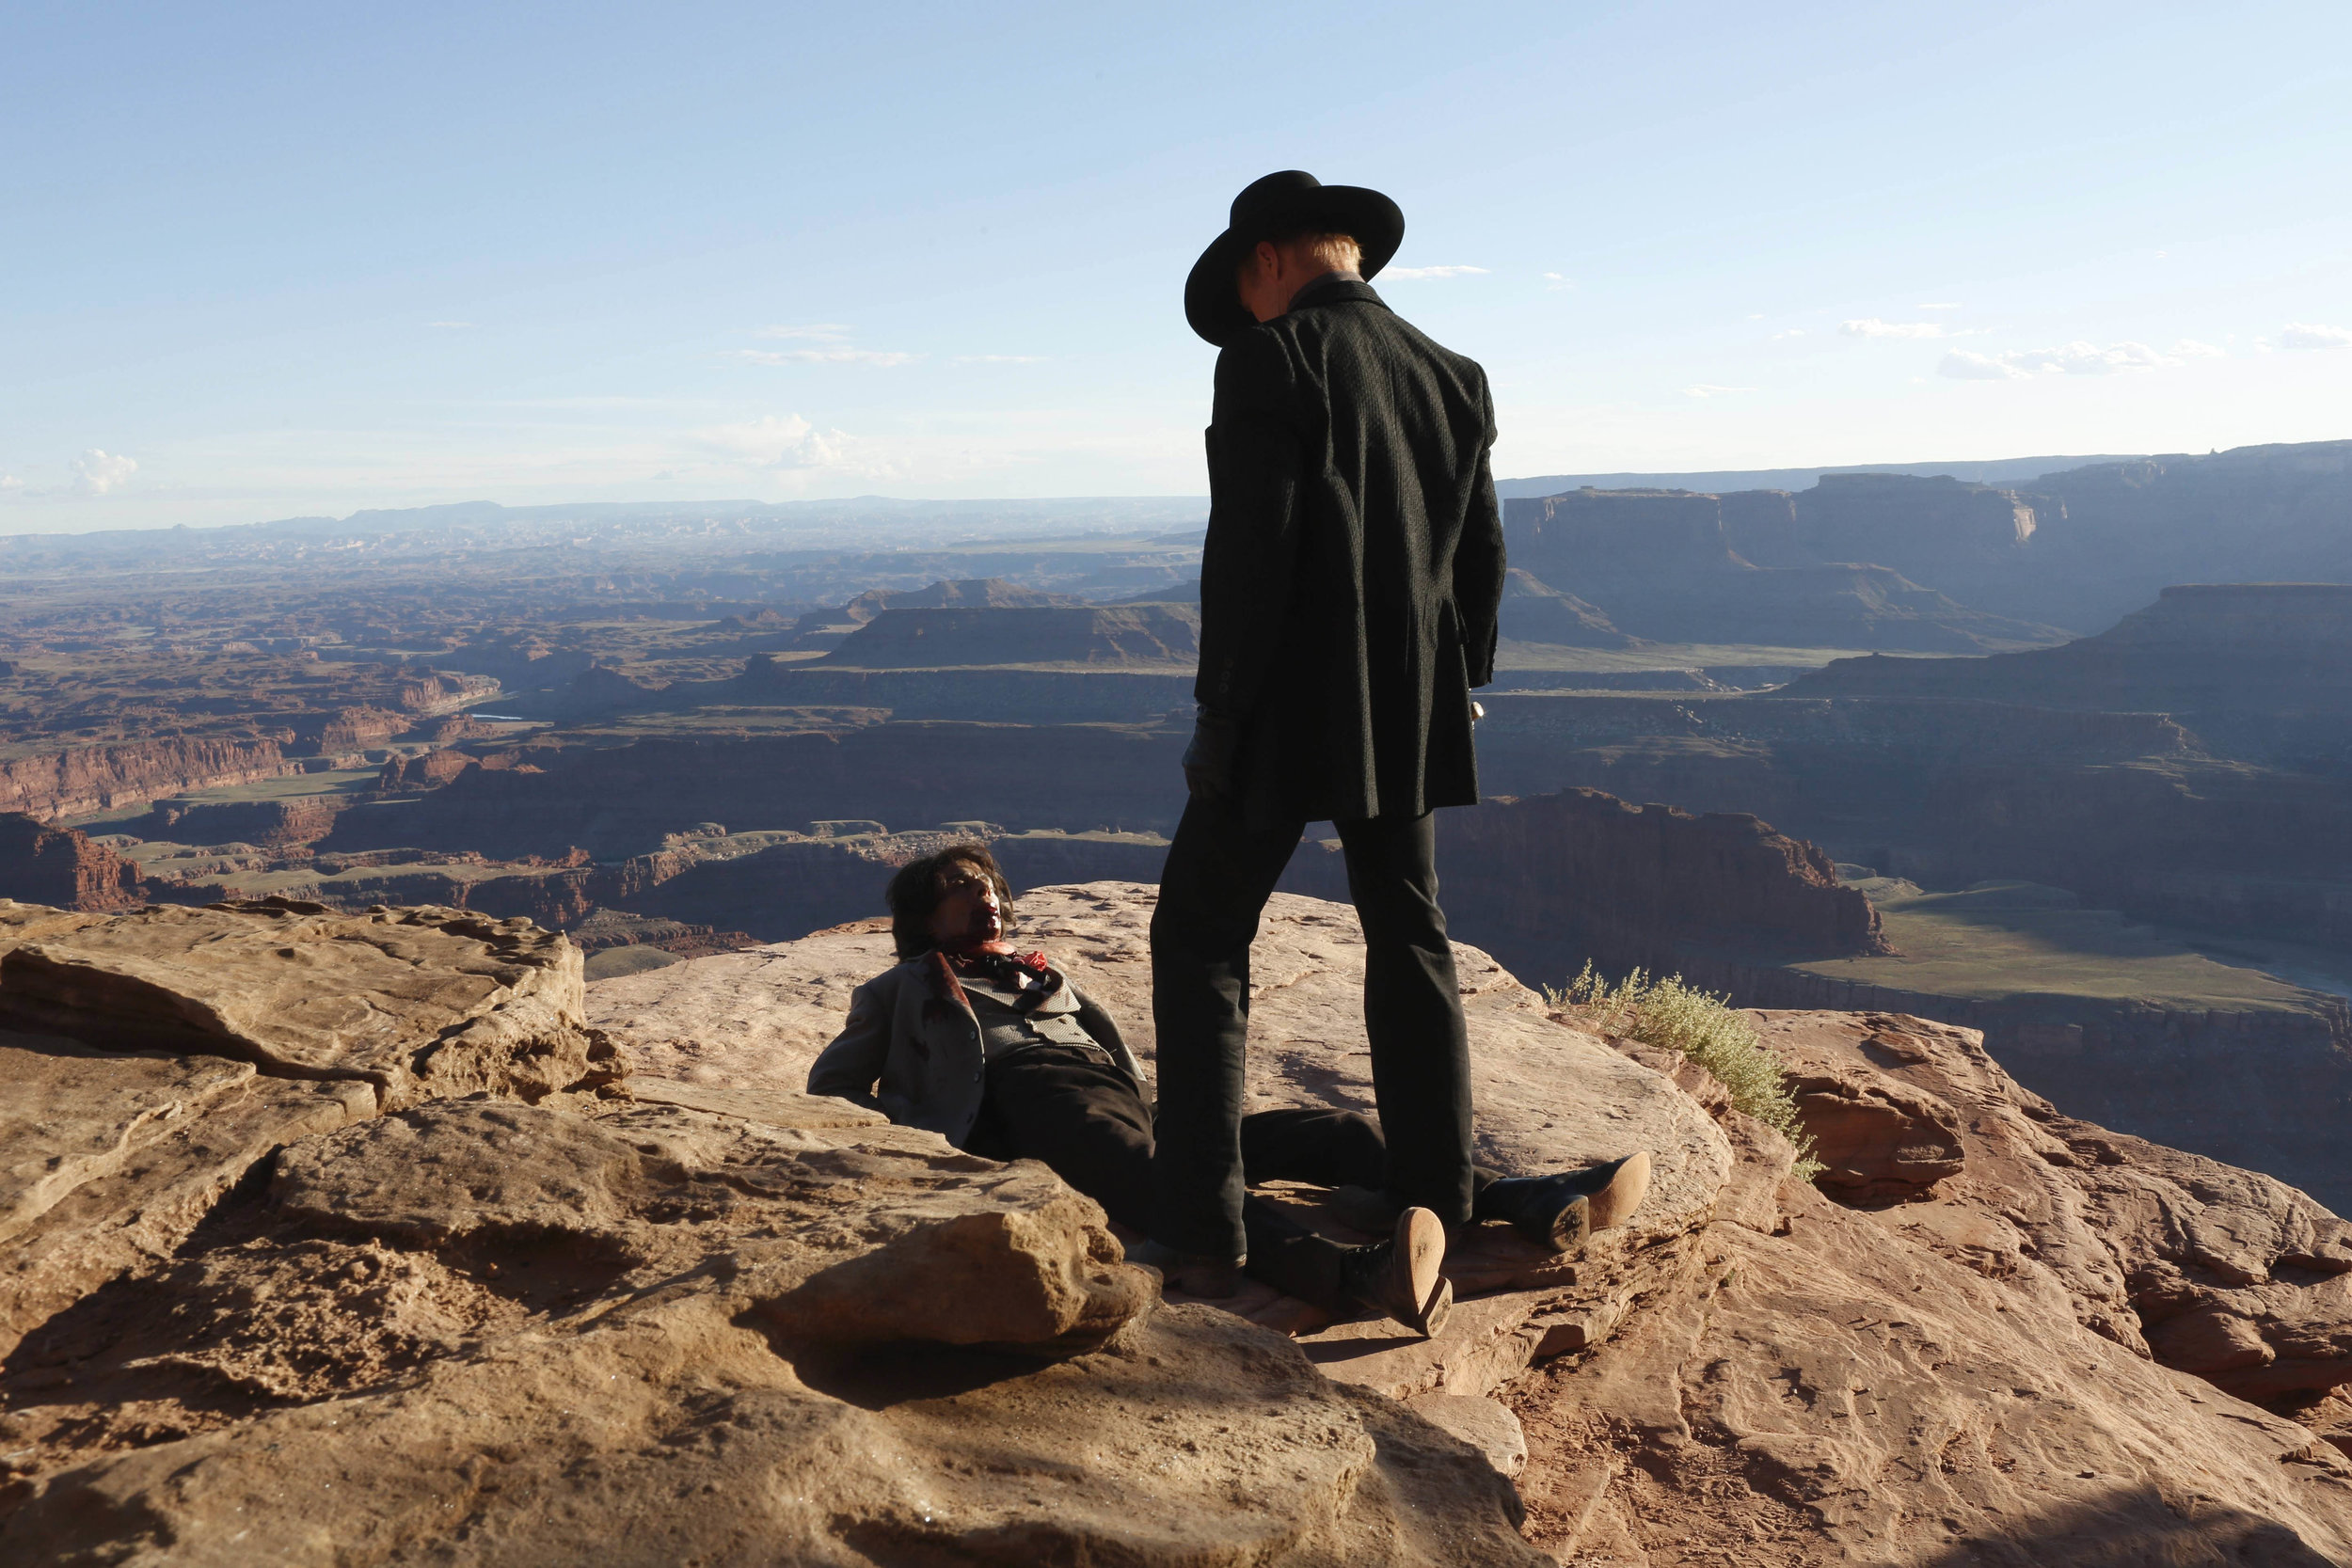   Westworld S01  Image - HBO 